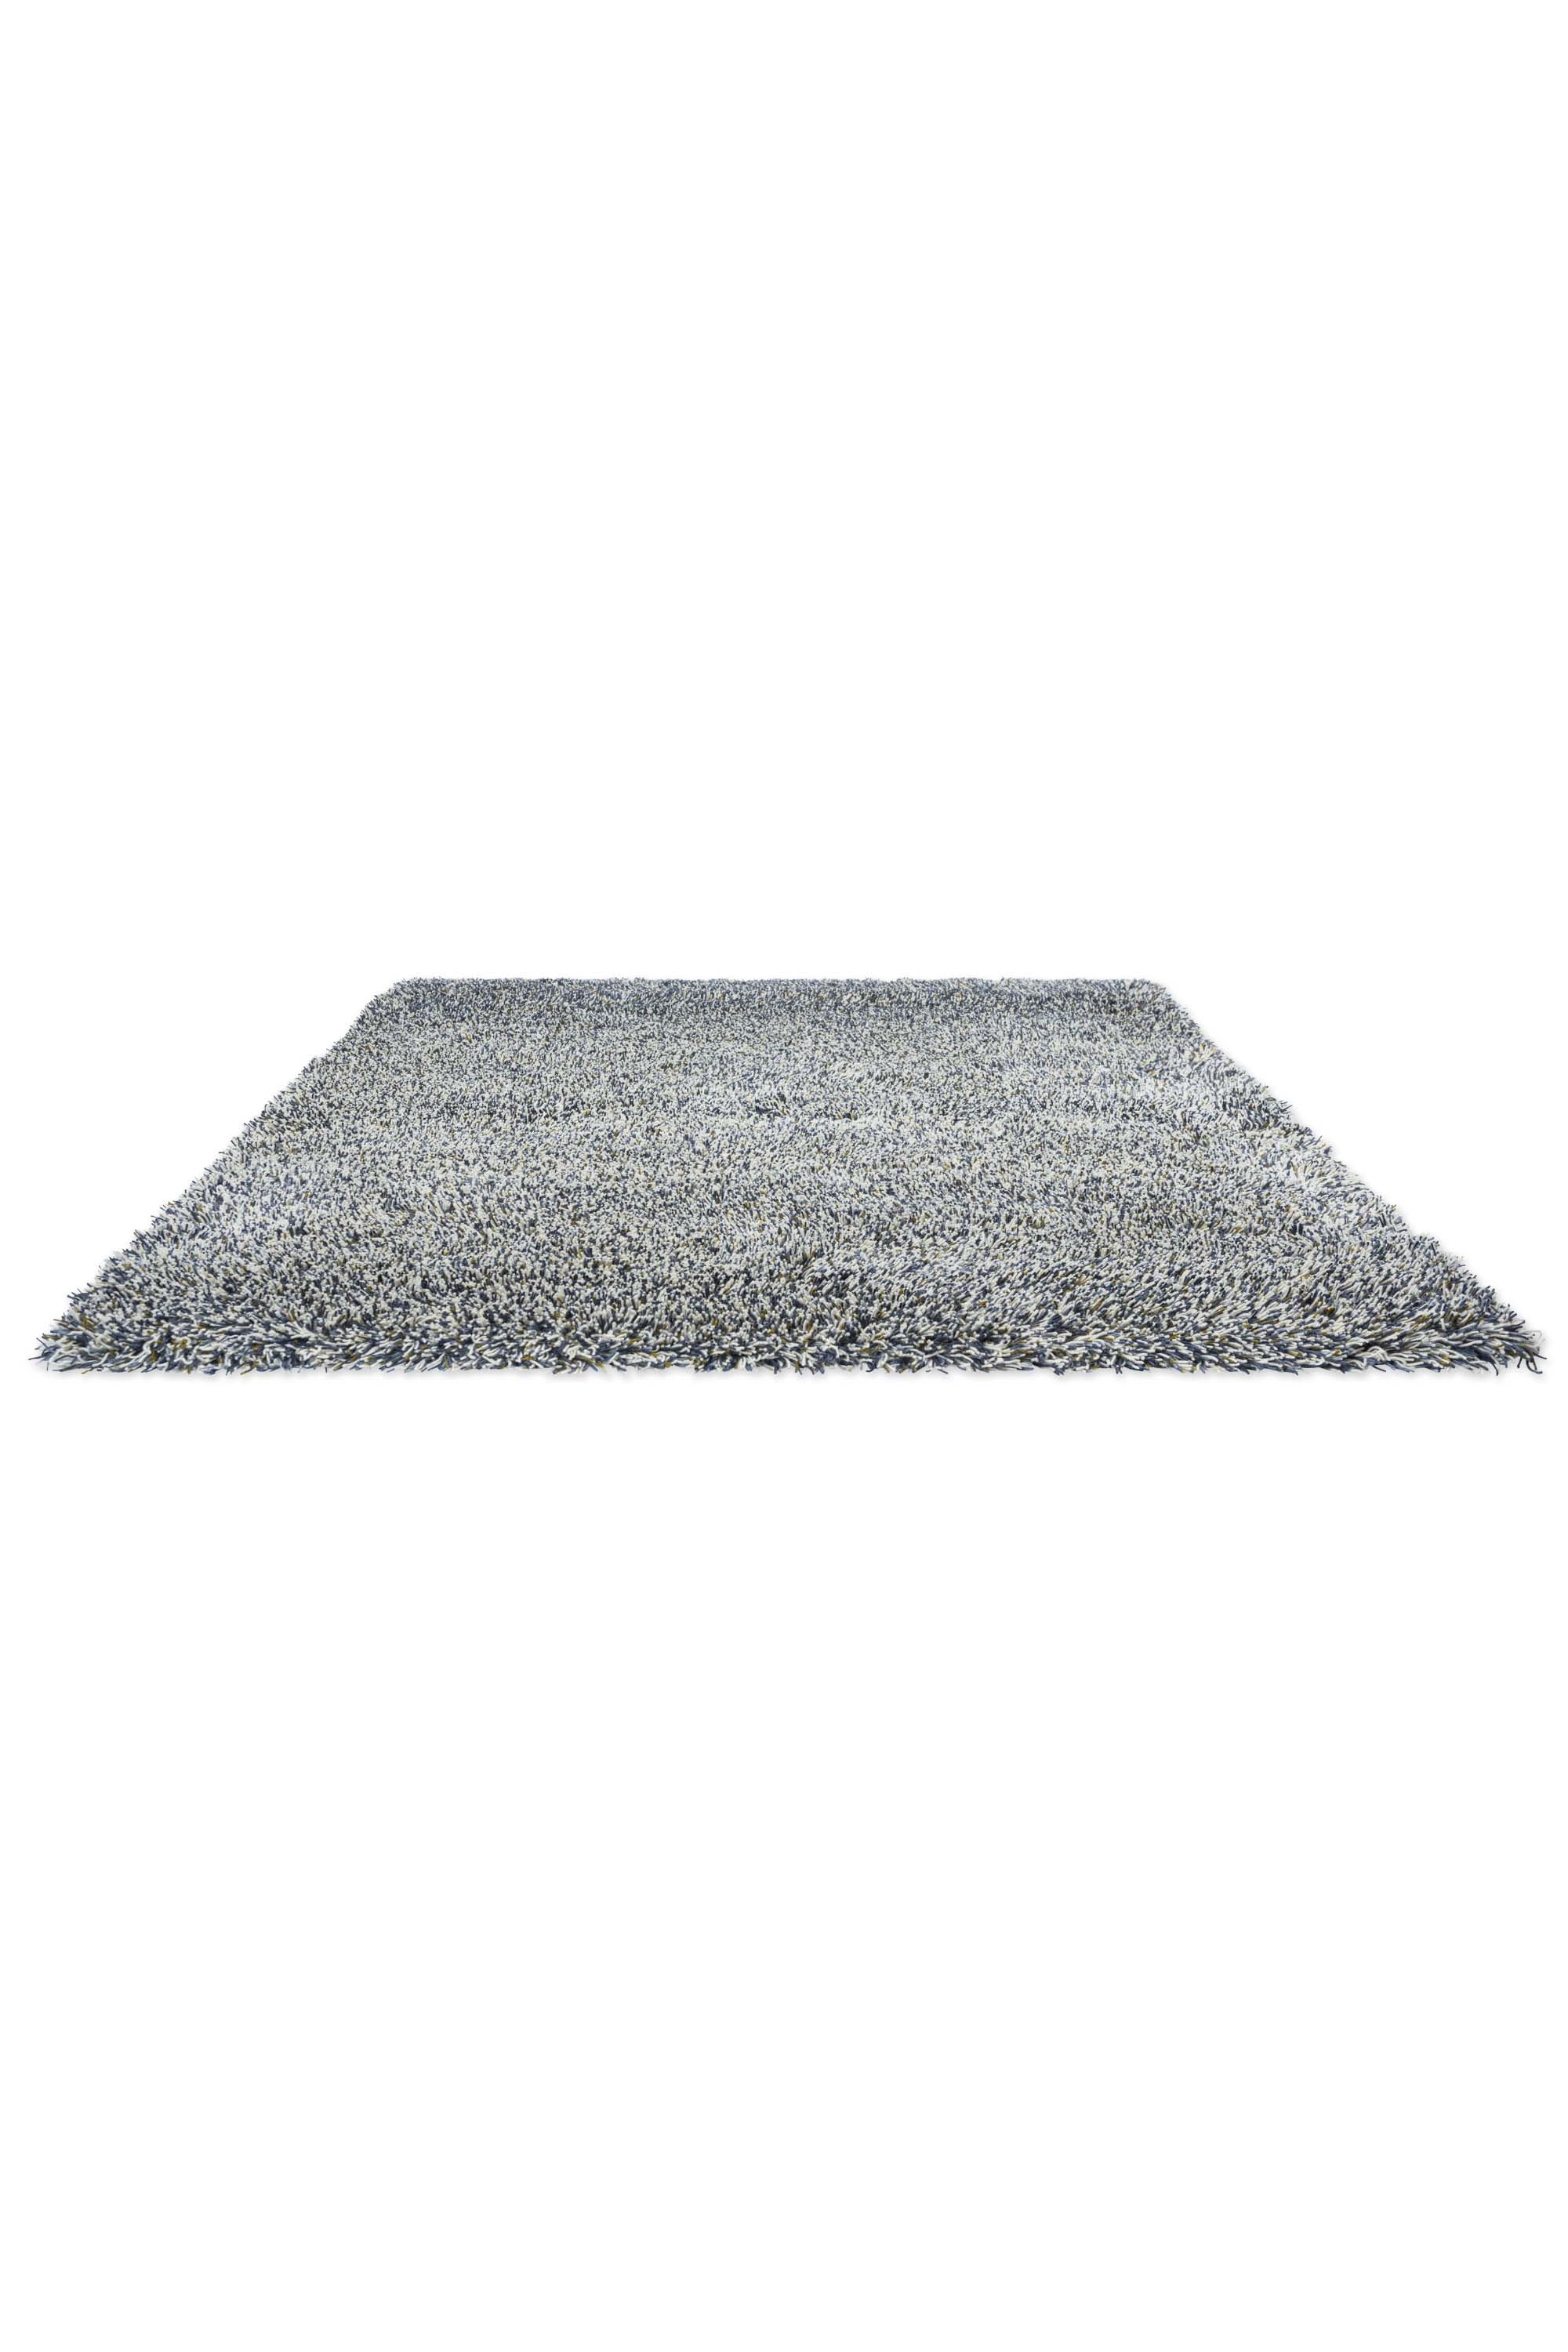 Plain shaggy rug with blue pile